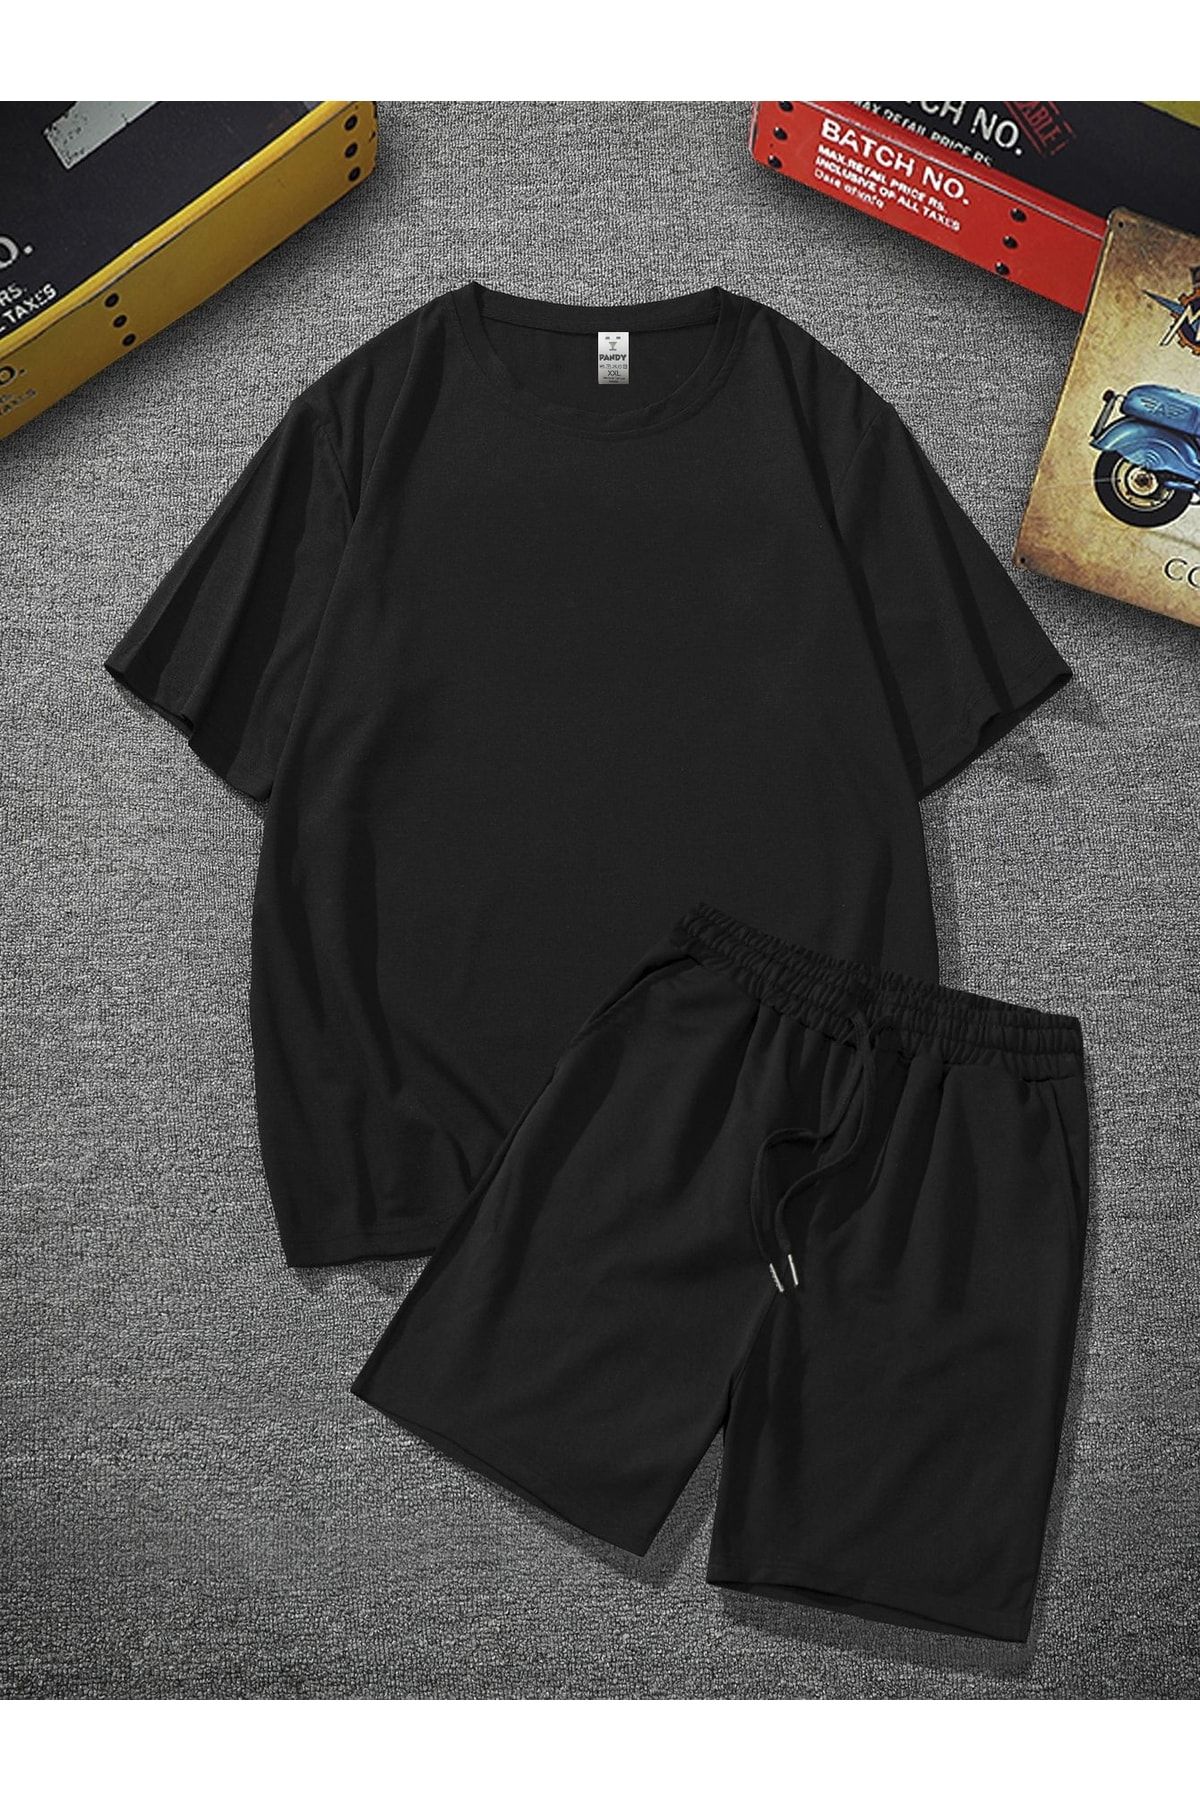 pandy Unisex Siyah Oversize Bol Kalıp T-shirt Şortlu Alt Üst Ikili Takım